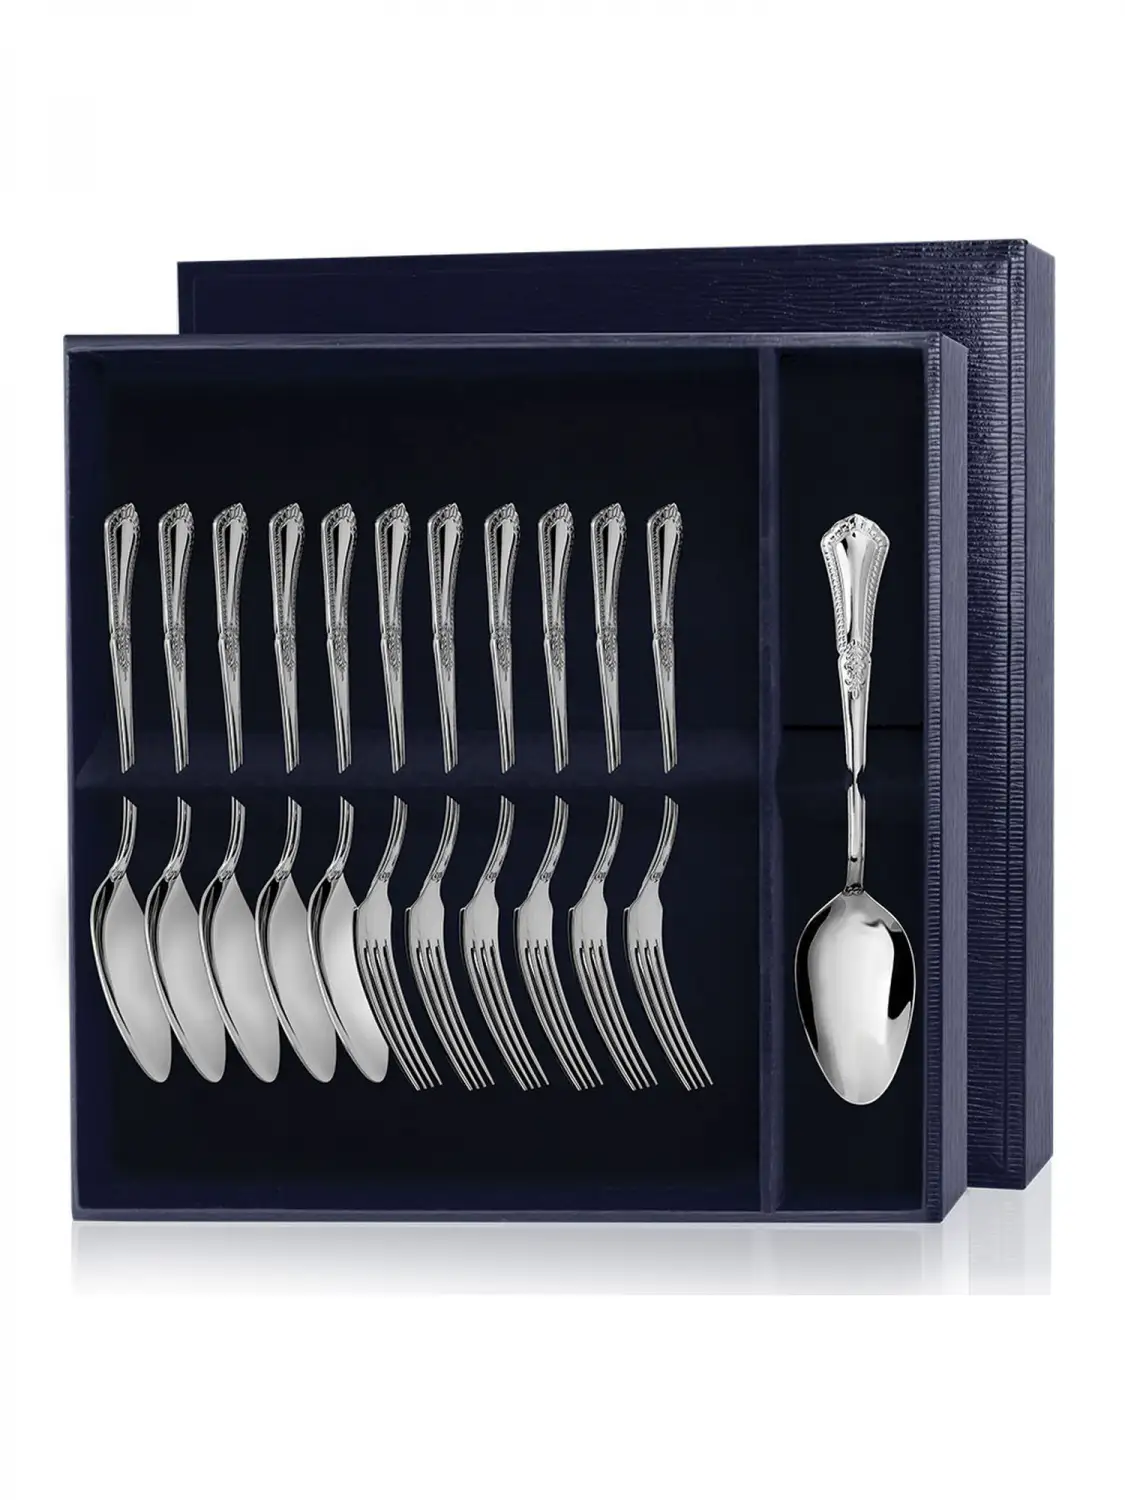 Набор десертный Фаворит: вилка и ложка (Серебро 925) набор десертный фаворит вилка и нож серебро 925